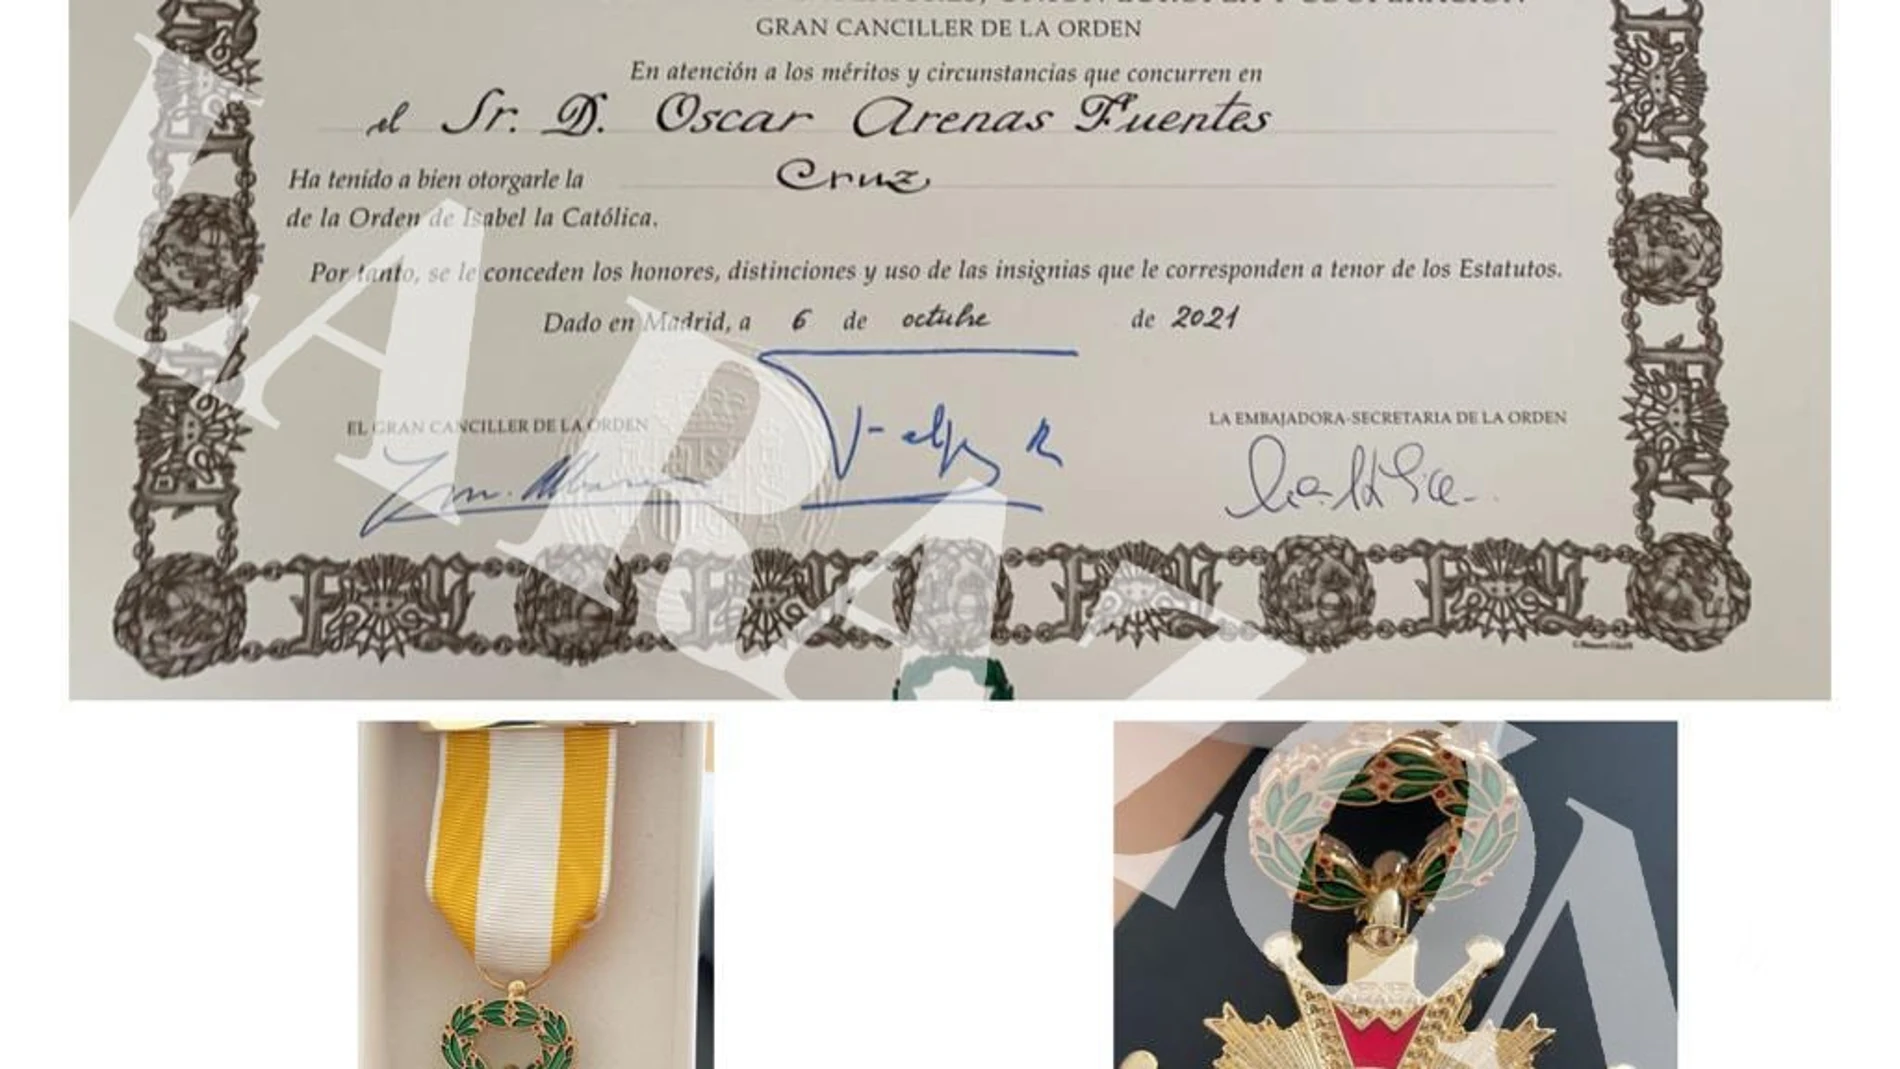 Condecoración de la Orden de Isabel la Católica concedida al Teniente Oscar Arenas